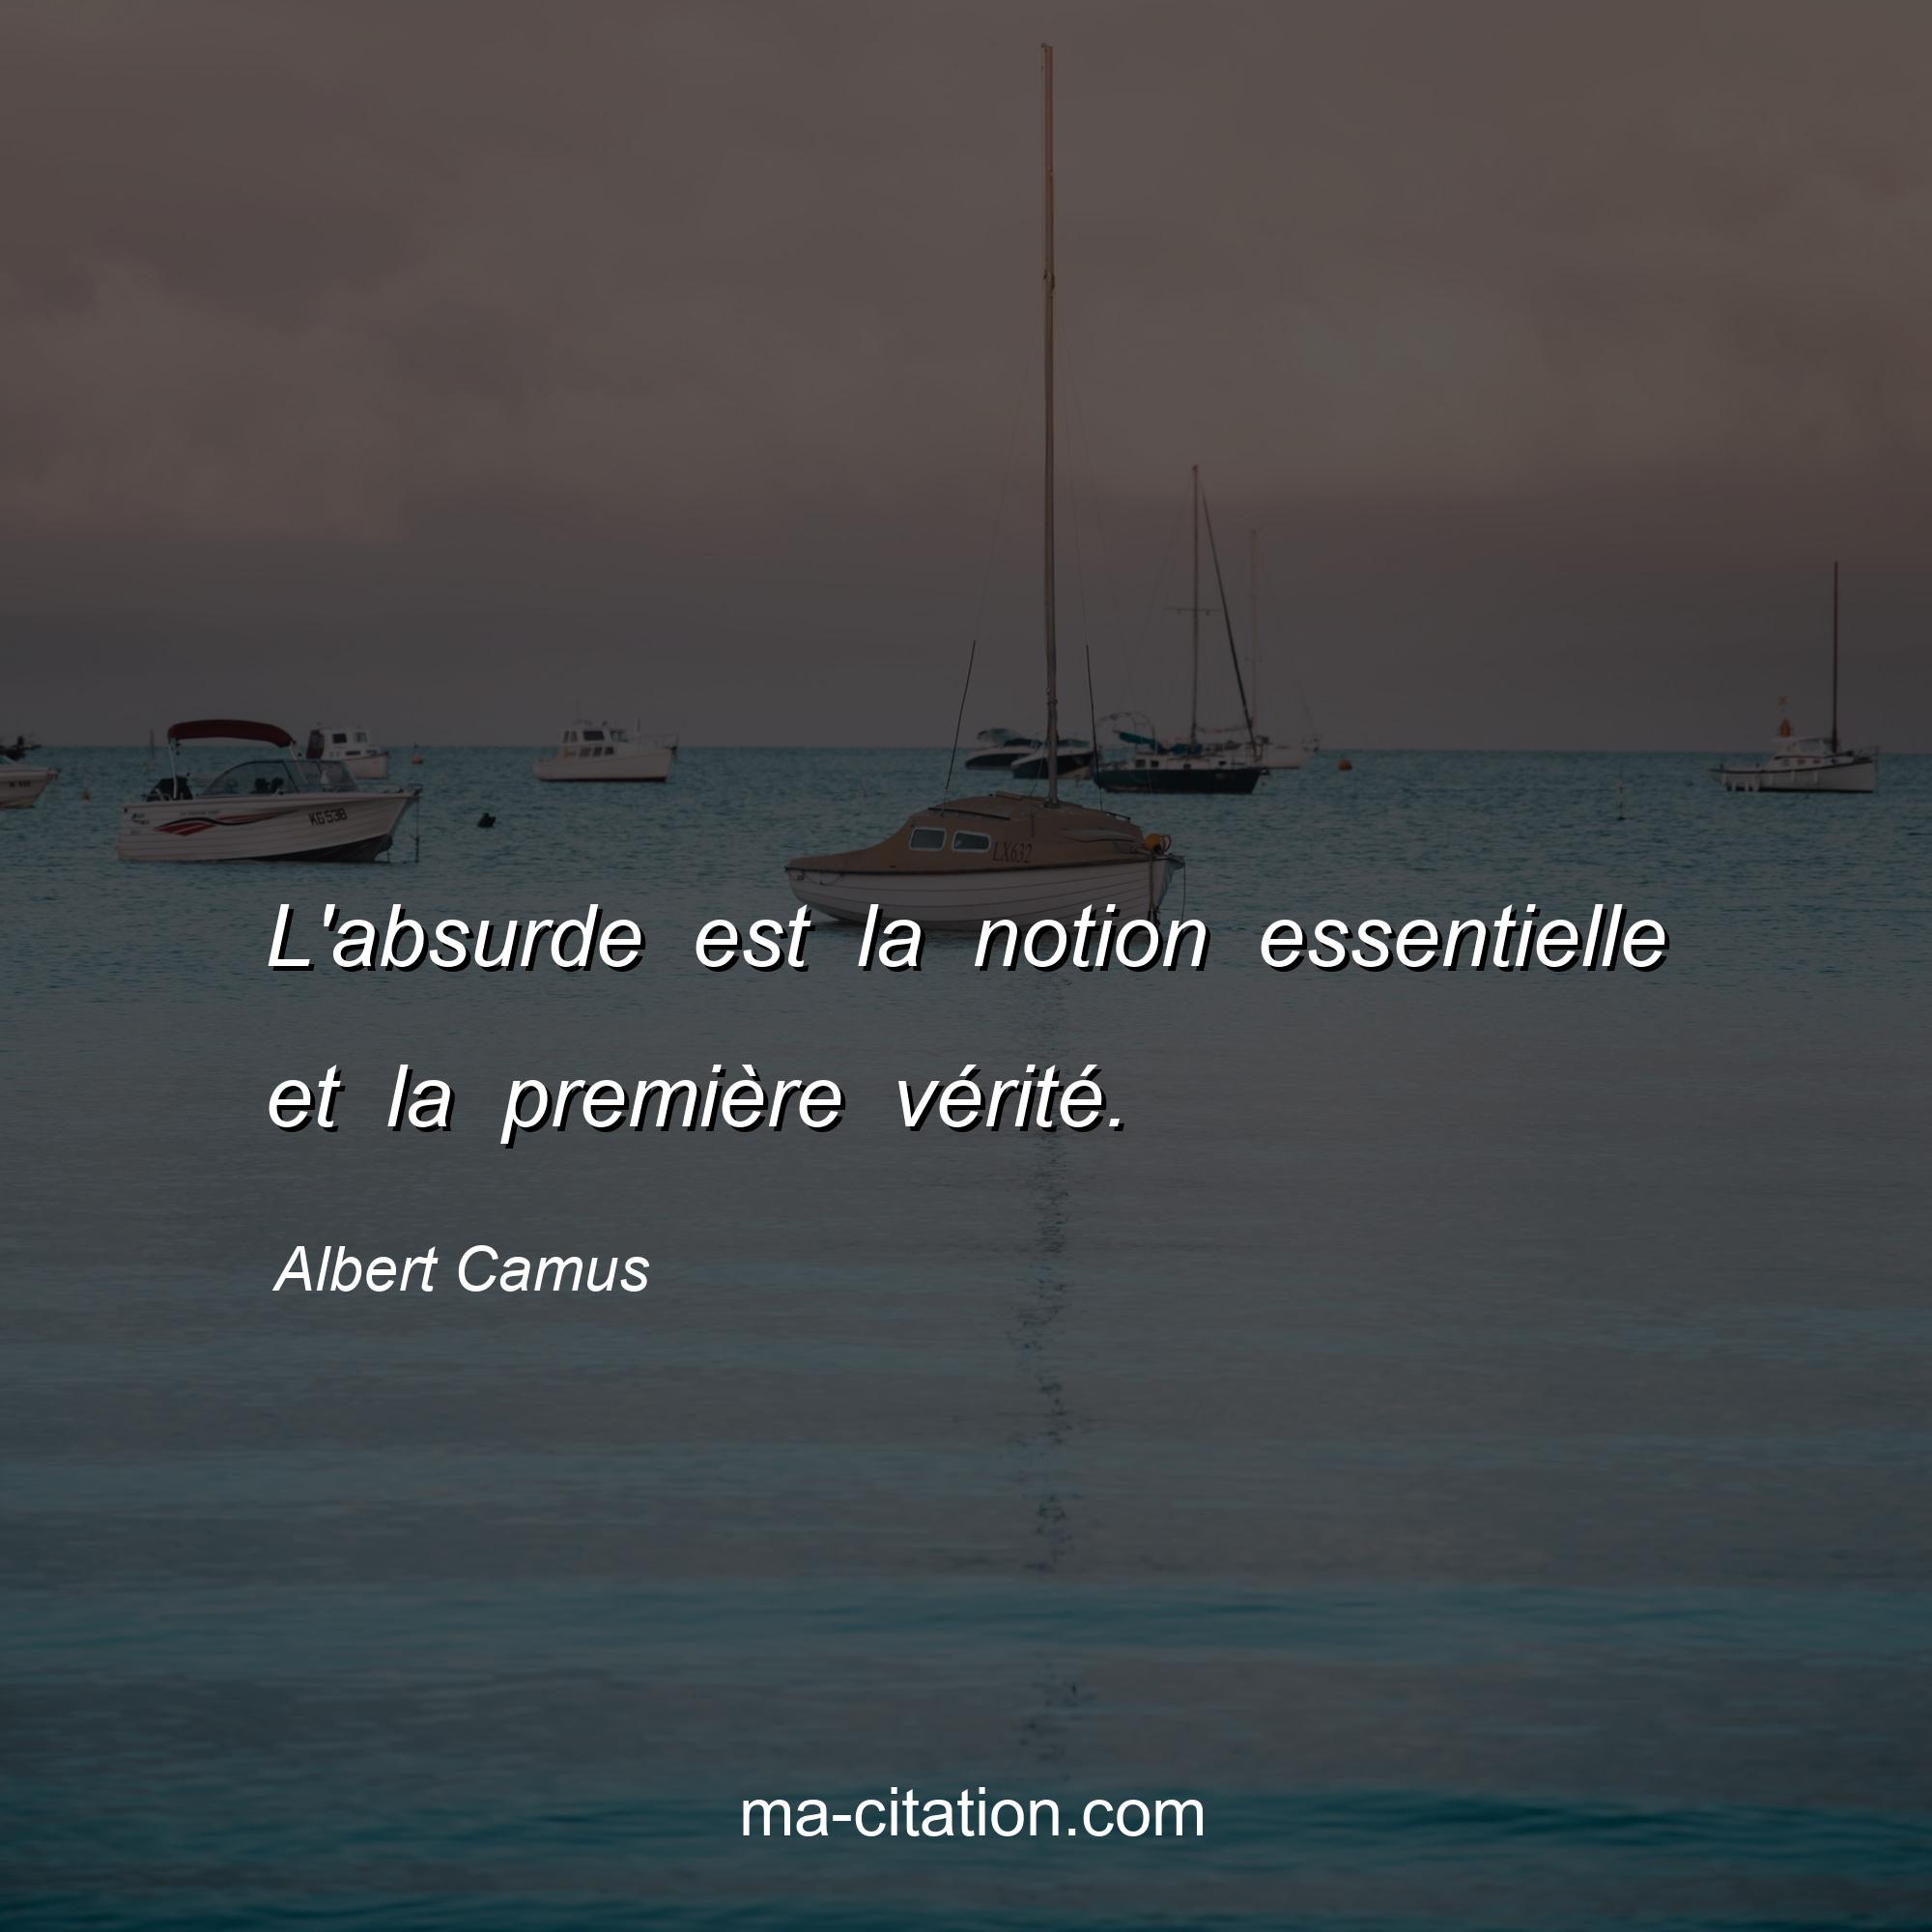 Albert Camus : L'absurde est la notion essentielle et la première vérité.